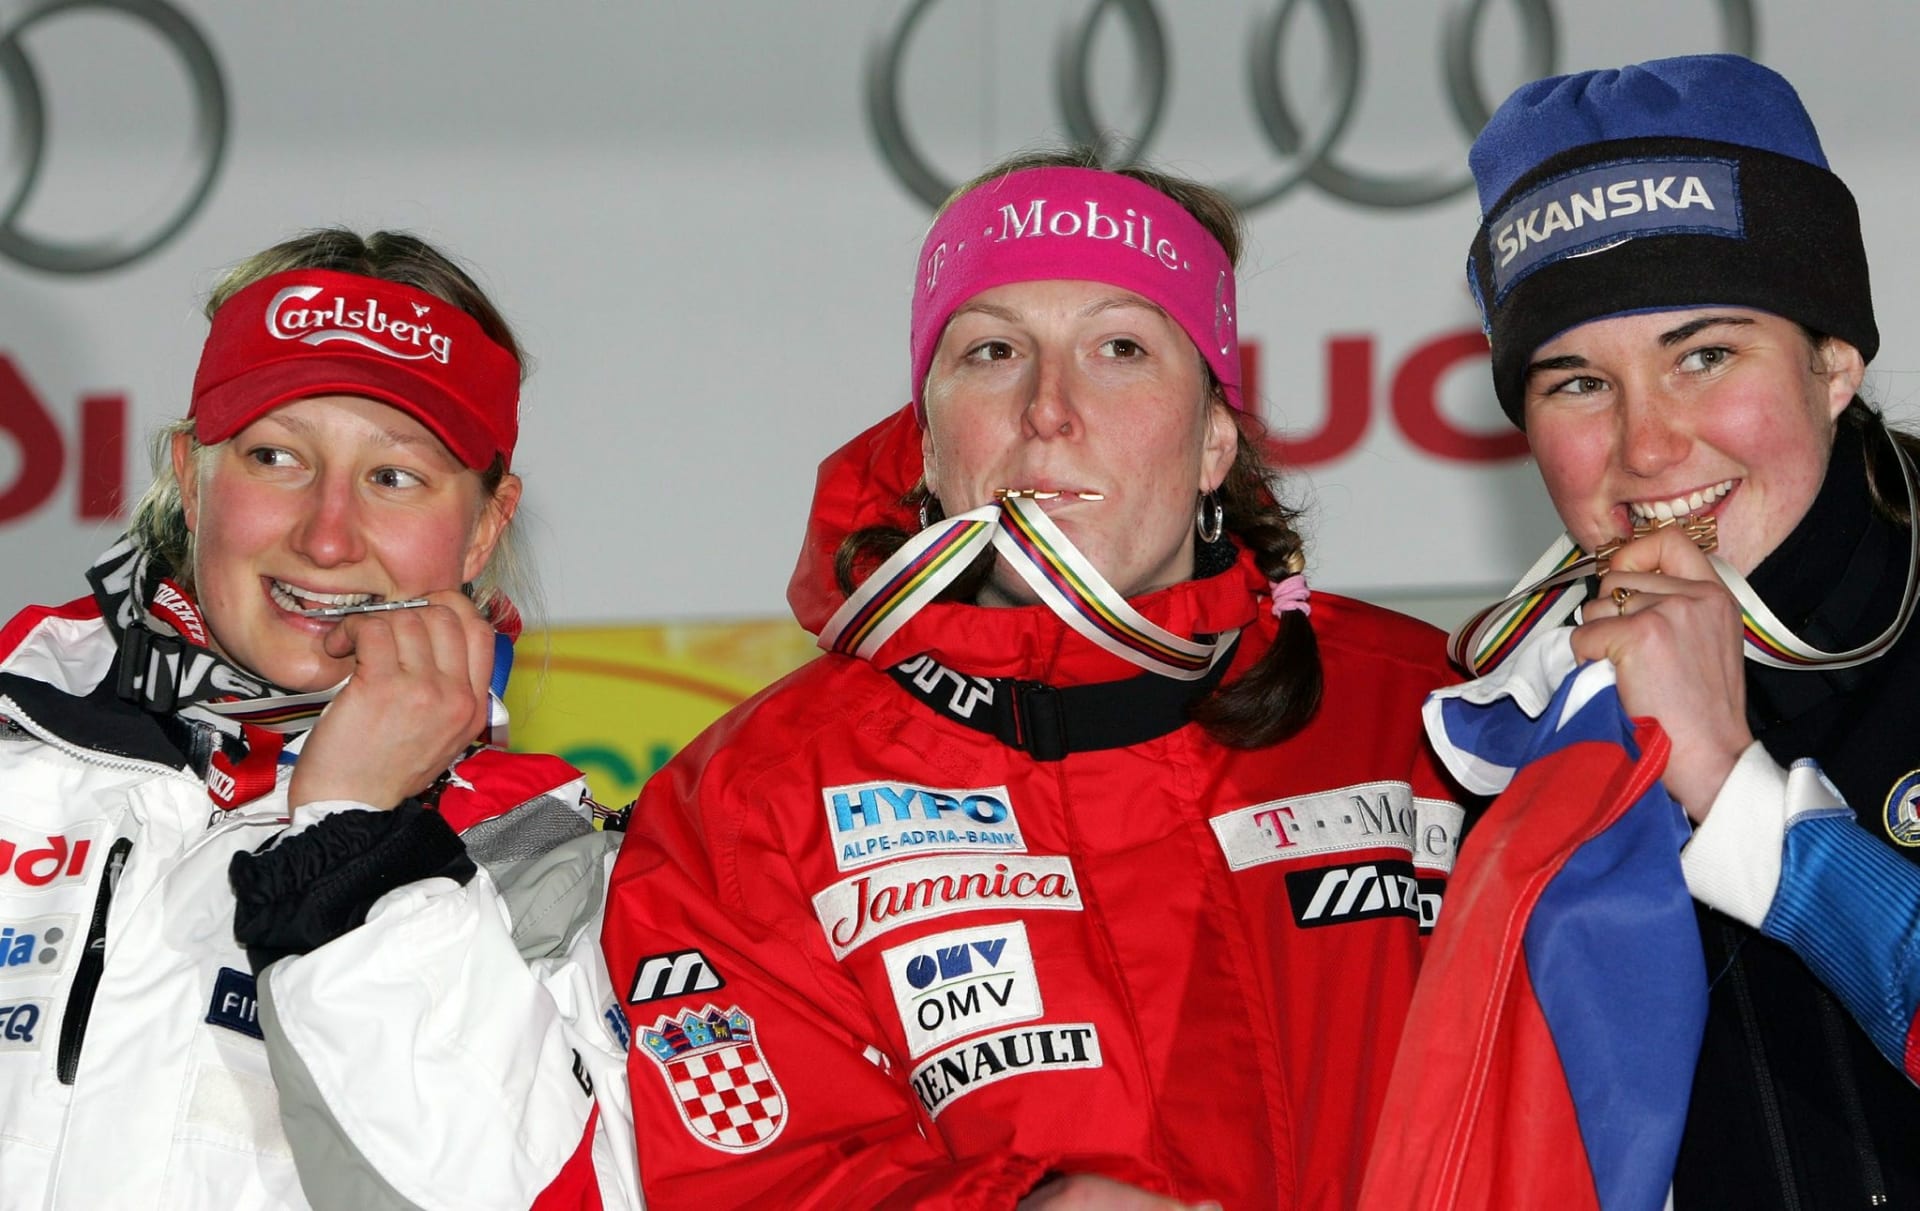 Bronzová radost. Šárka Záhrobská (vpravo) se raduje z prvního medailového zisku na velké světové akci. Uprostřed mistryně světa ve slalomu Janica Kosteličová, vlevo stříbrná medailistku Tanja Poutiainenová.